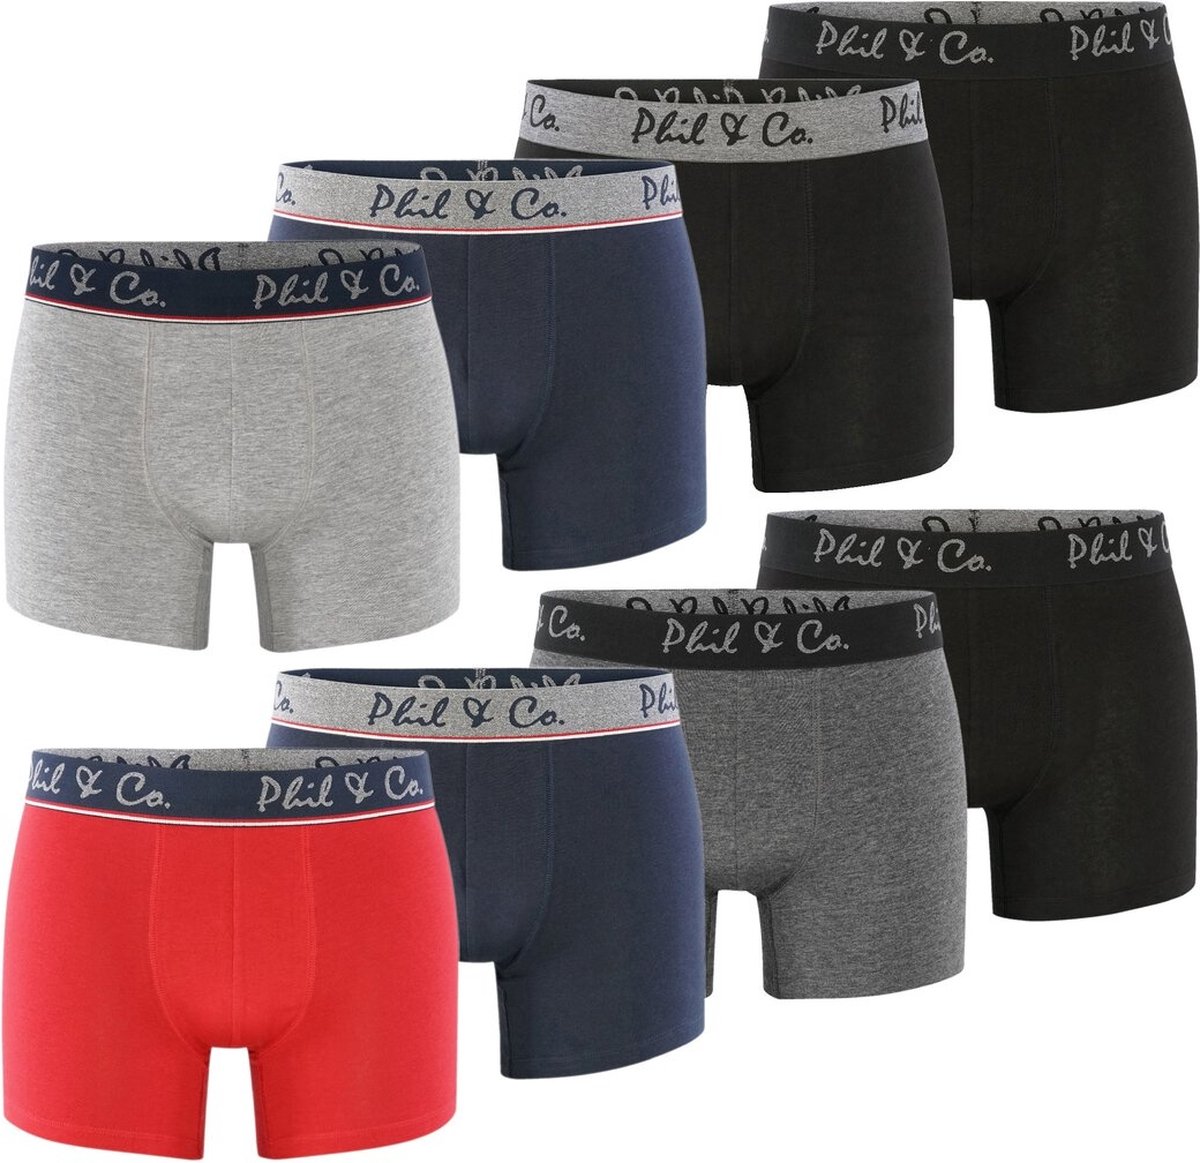 Phil & Co Boxershorts Heren Multipack 8-Pack Marine Rood Zwart Antraciet - Maat S | Onderbroek